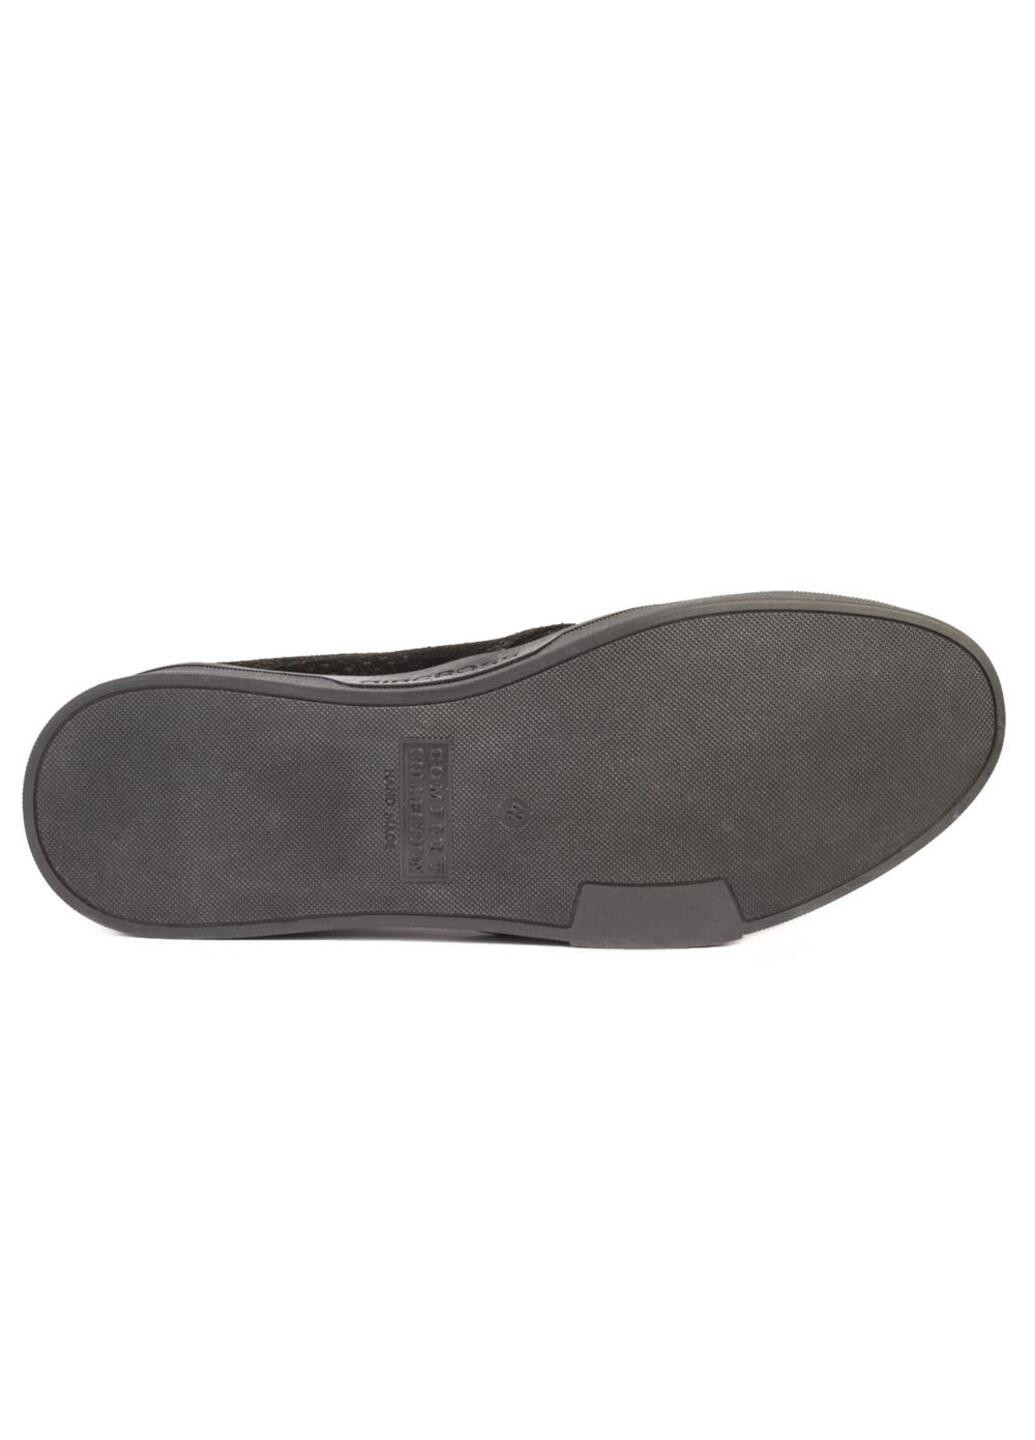 Черные повседневные туфли мужские бренда 9300306_(249) Mida на шнурках